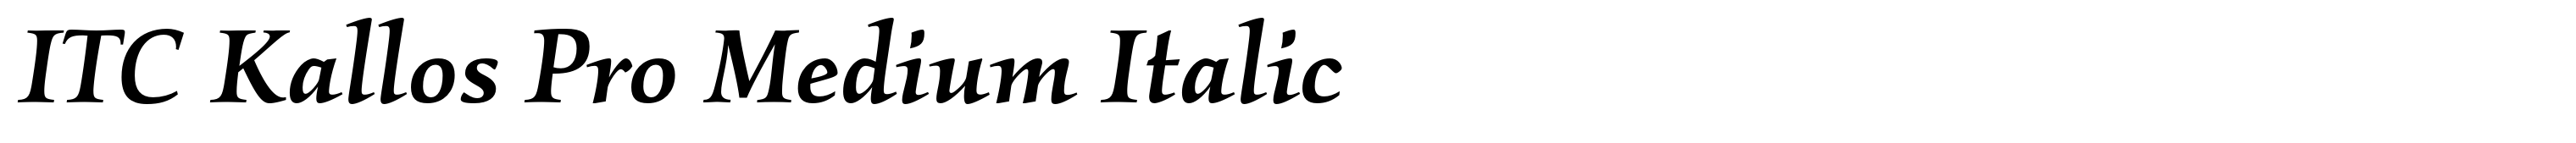 ITC Kallos Pro Medium Italic